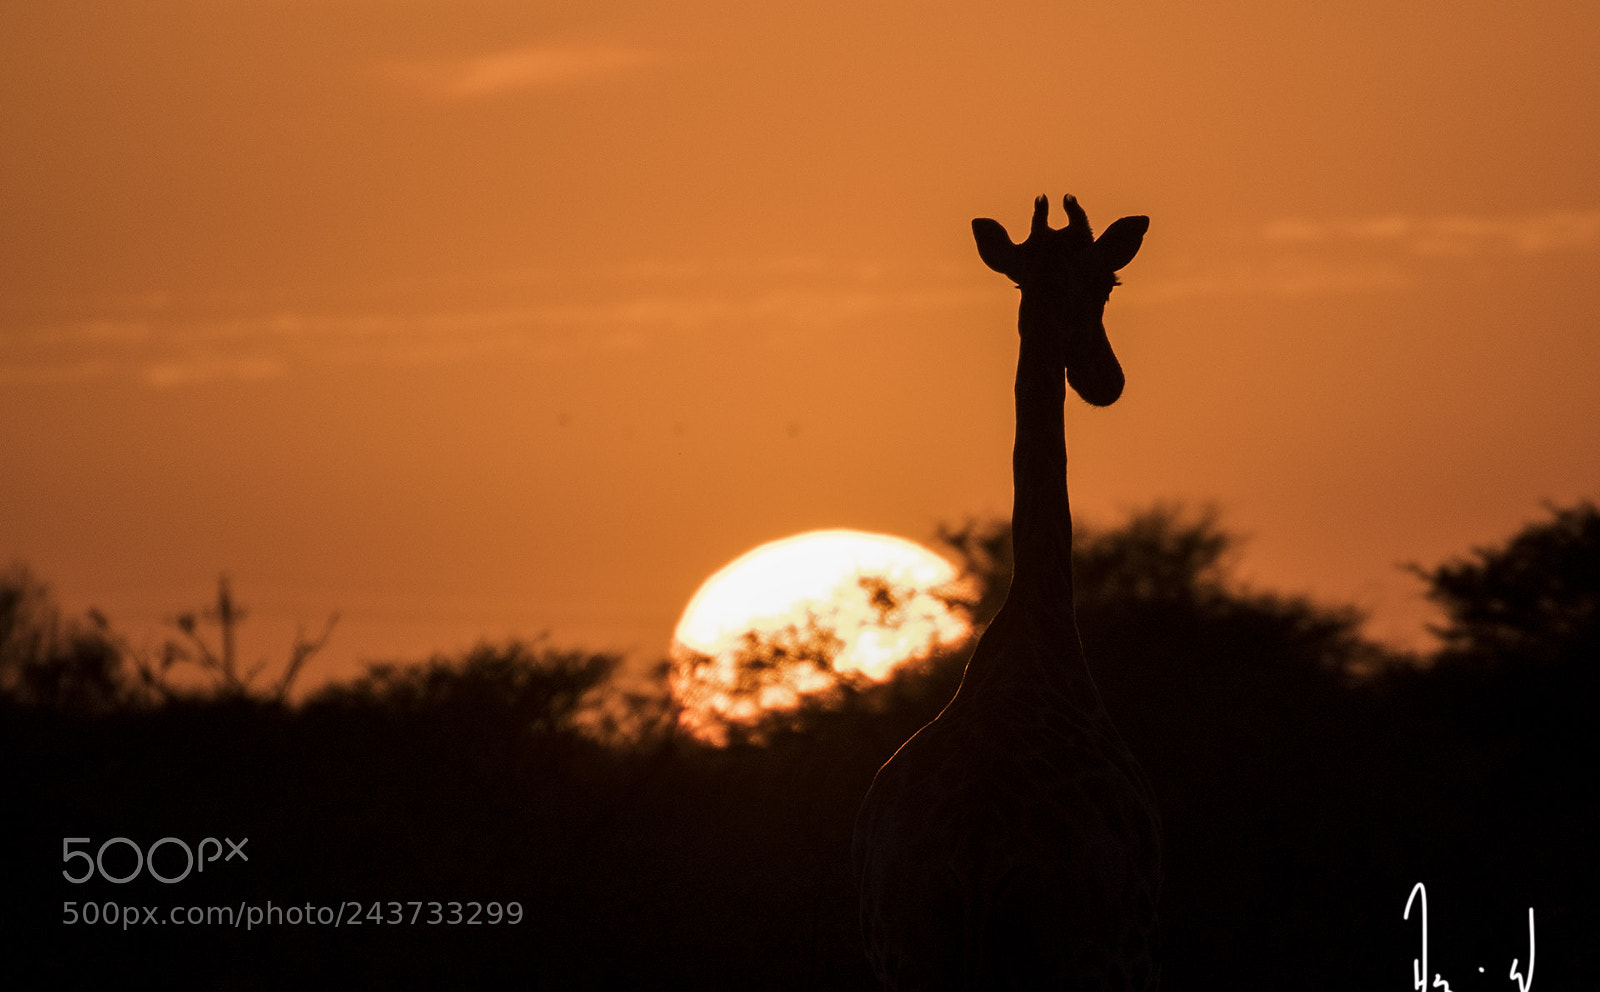 Nikon D500 sample photo. Sunrise giraffe photography